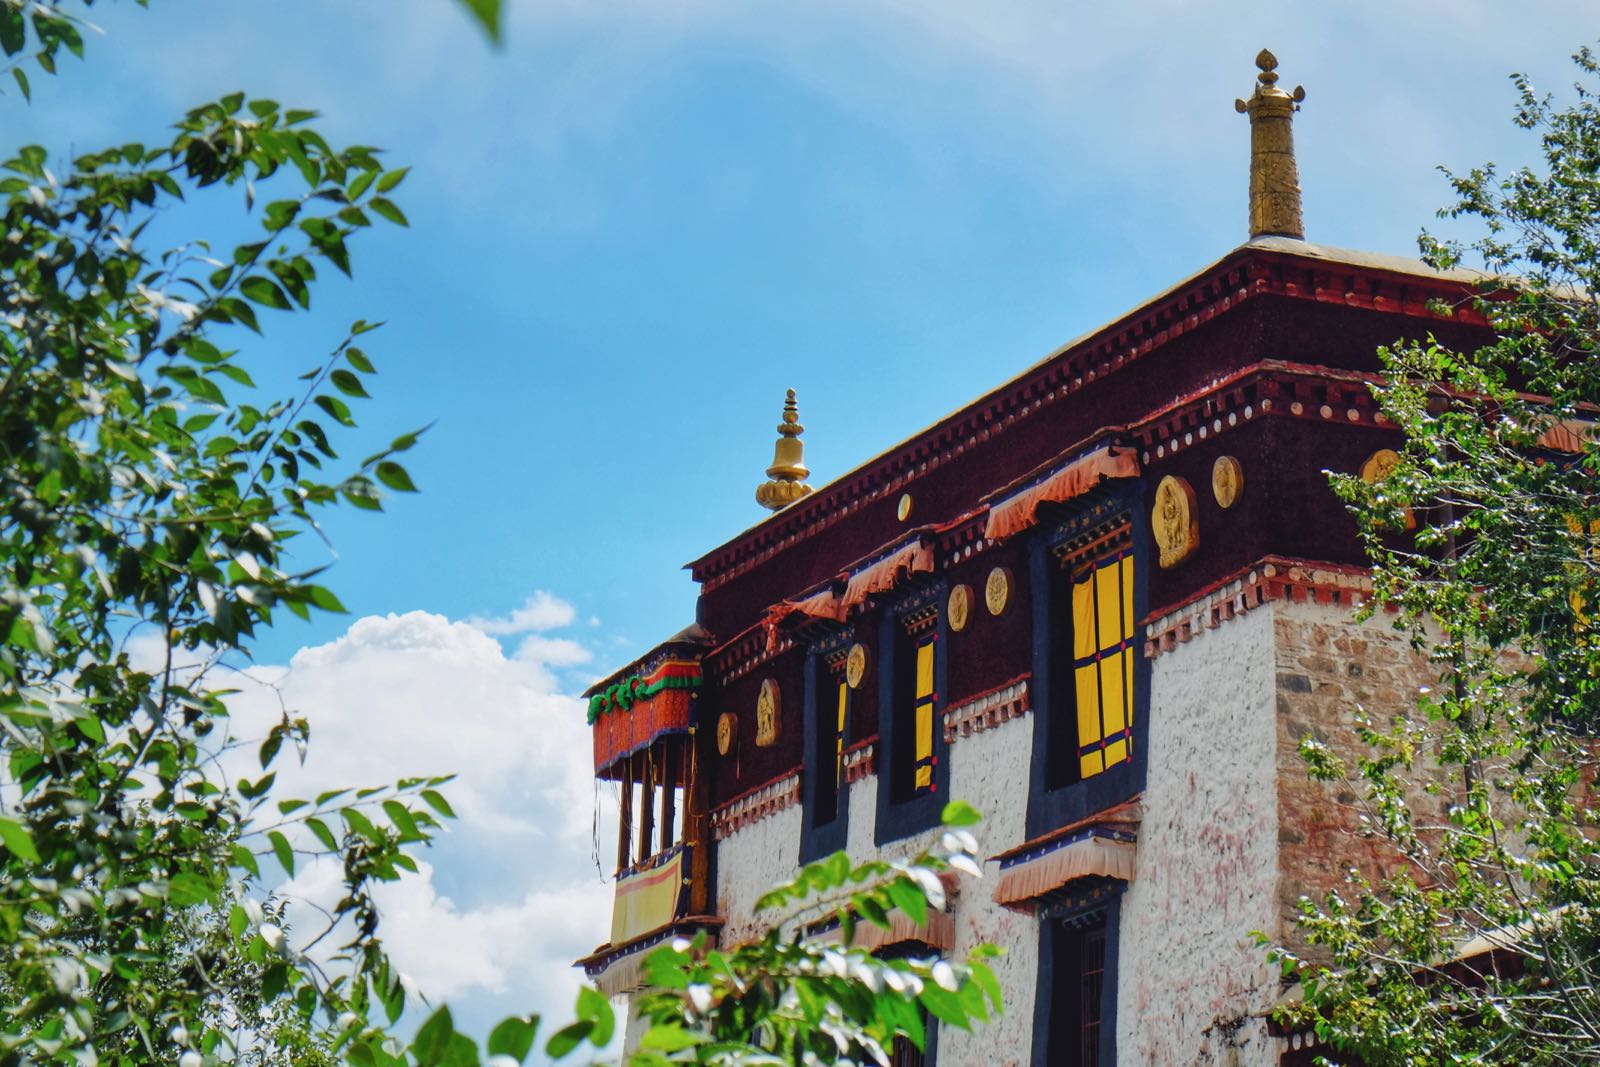 非常小众但是绝对值得一去的地方！哲蚌寺是藏传佛教最大的寺庙，依山而建，